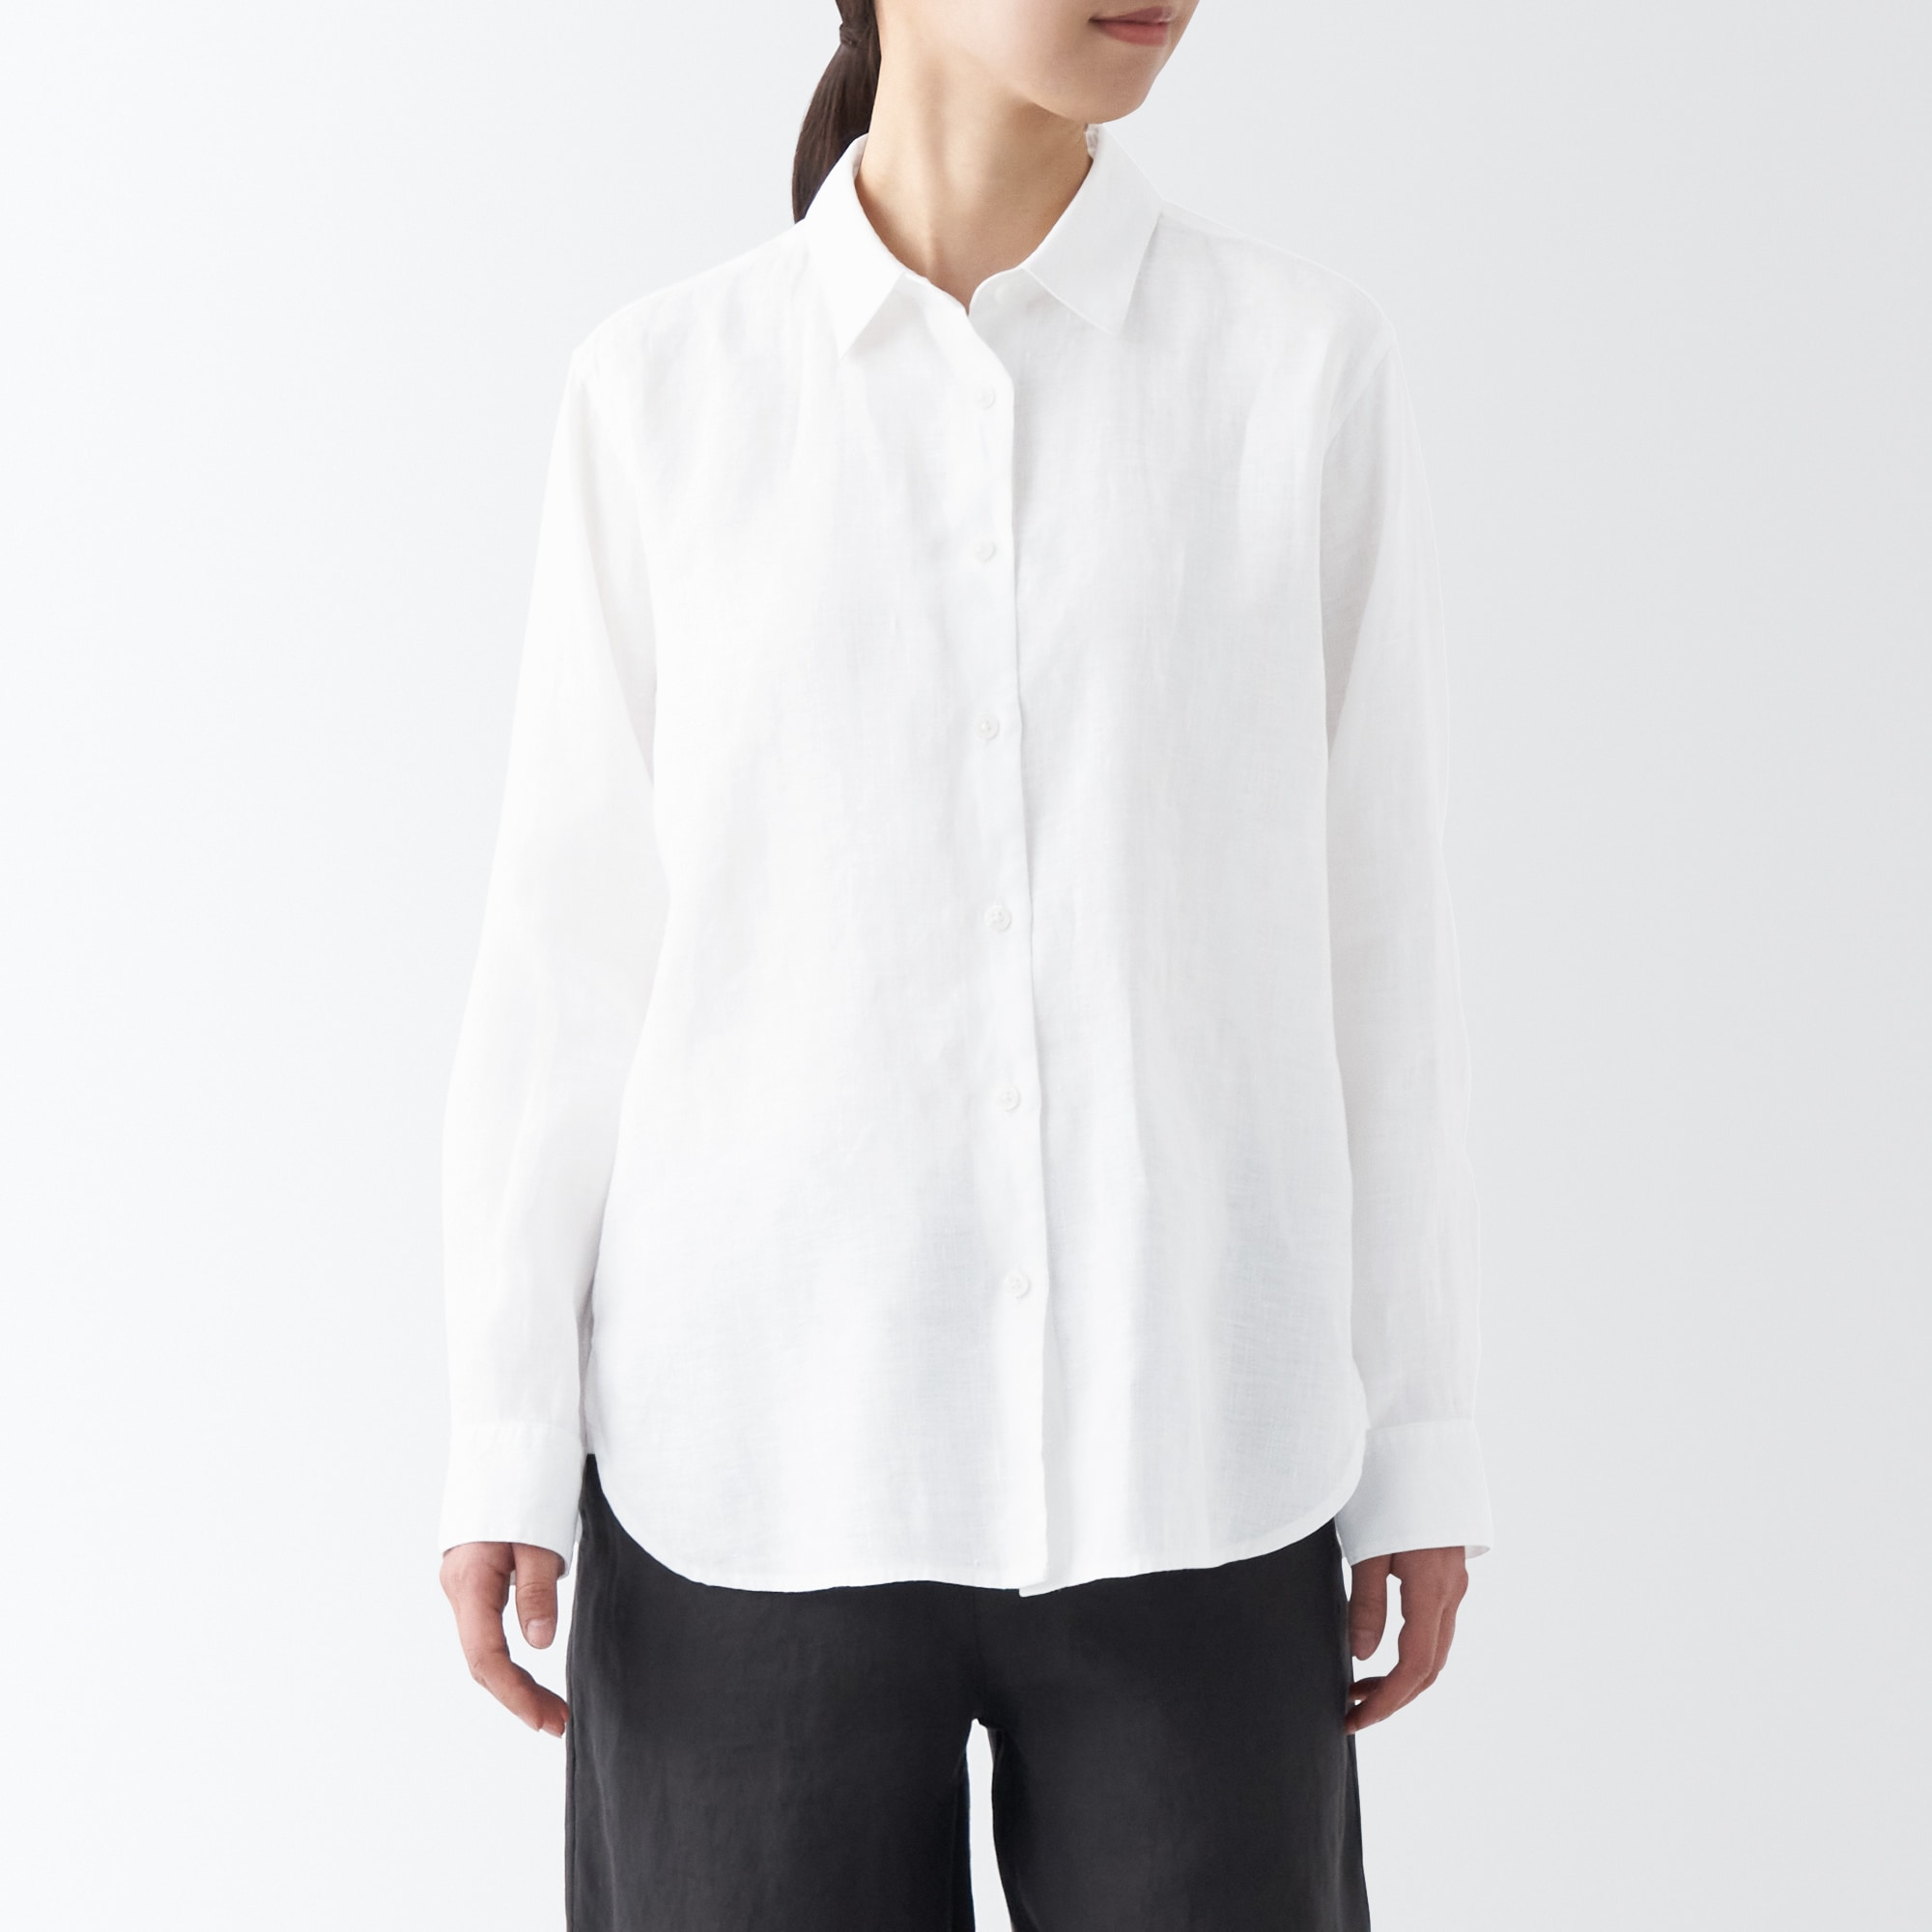 무인양품 일본 여성 긴팔 셔츠 헴프 워시드아웃 레귤러카라